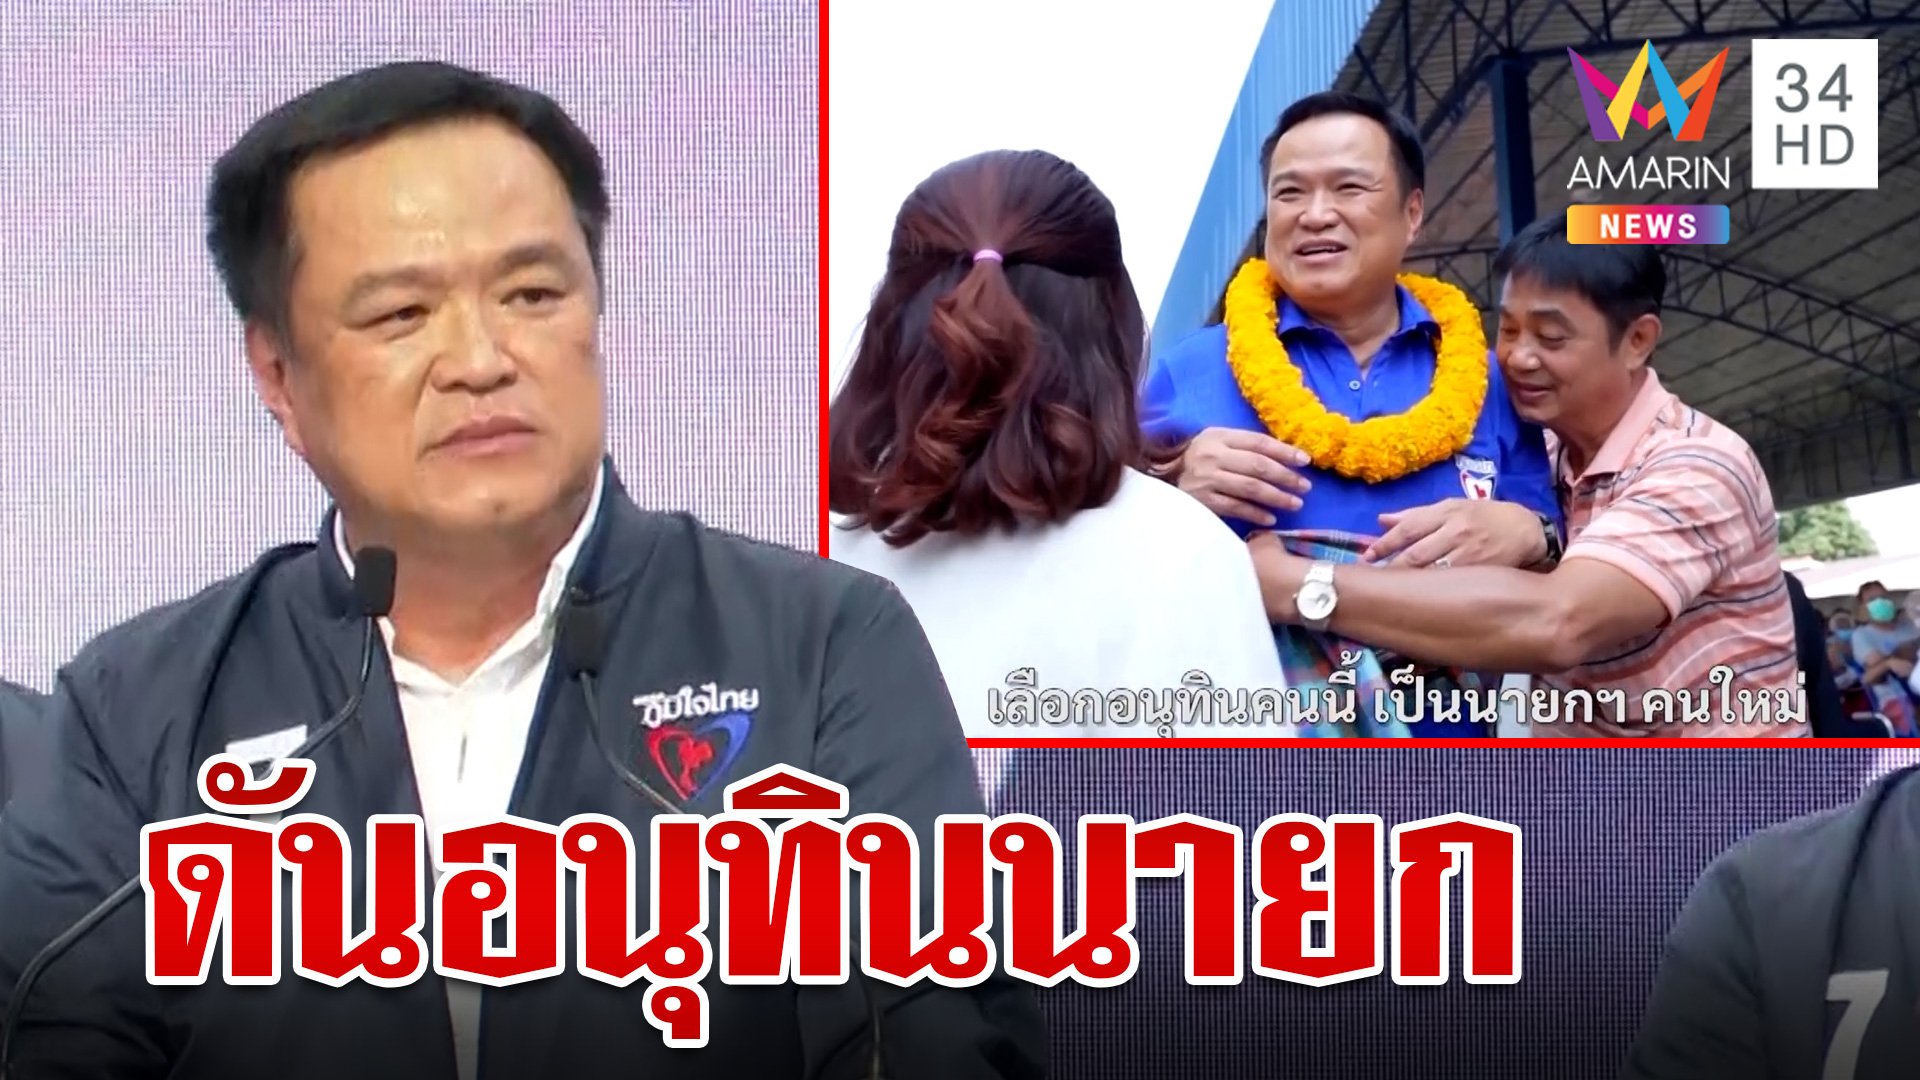 ภูมิใจไทย ปล่อยซิงเกิล ดัน “อนุทิน” เป็นนายกฯ  | ทุบโต๊ะข่าว | 6 เม.ย. 66 | AMARIN TVHD34